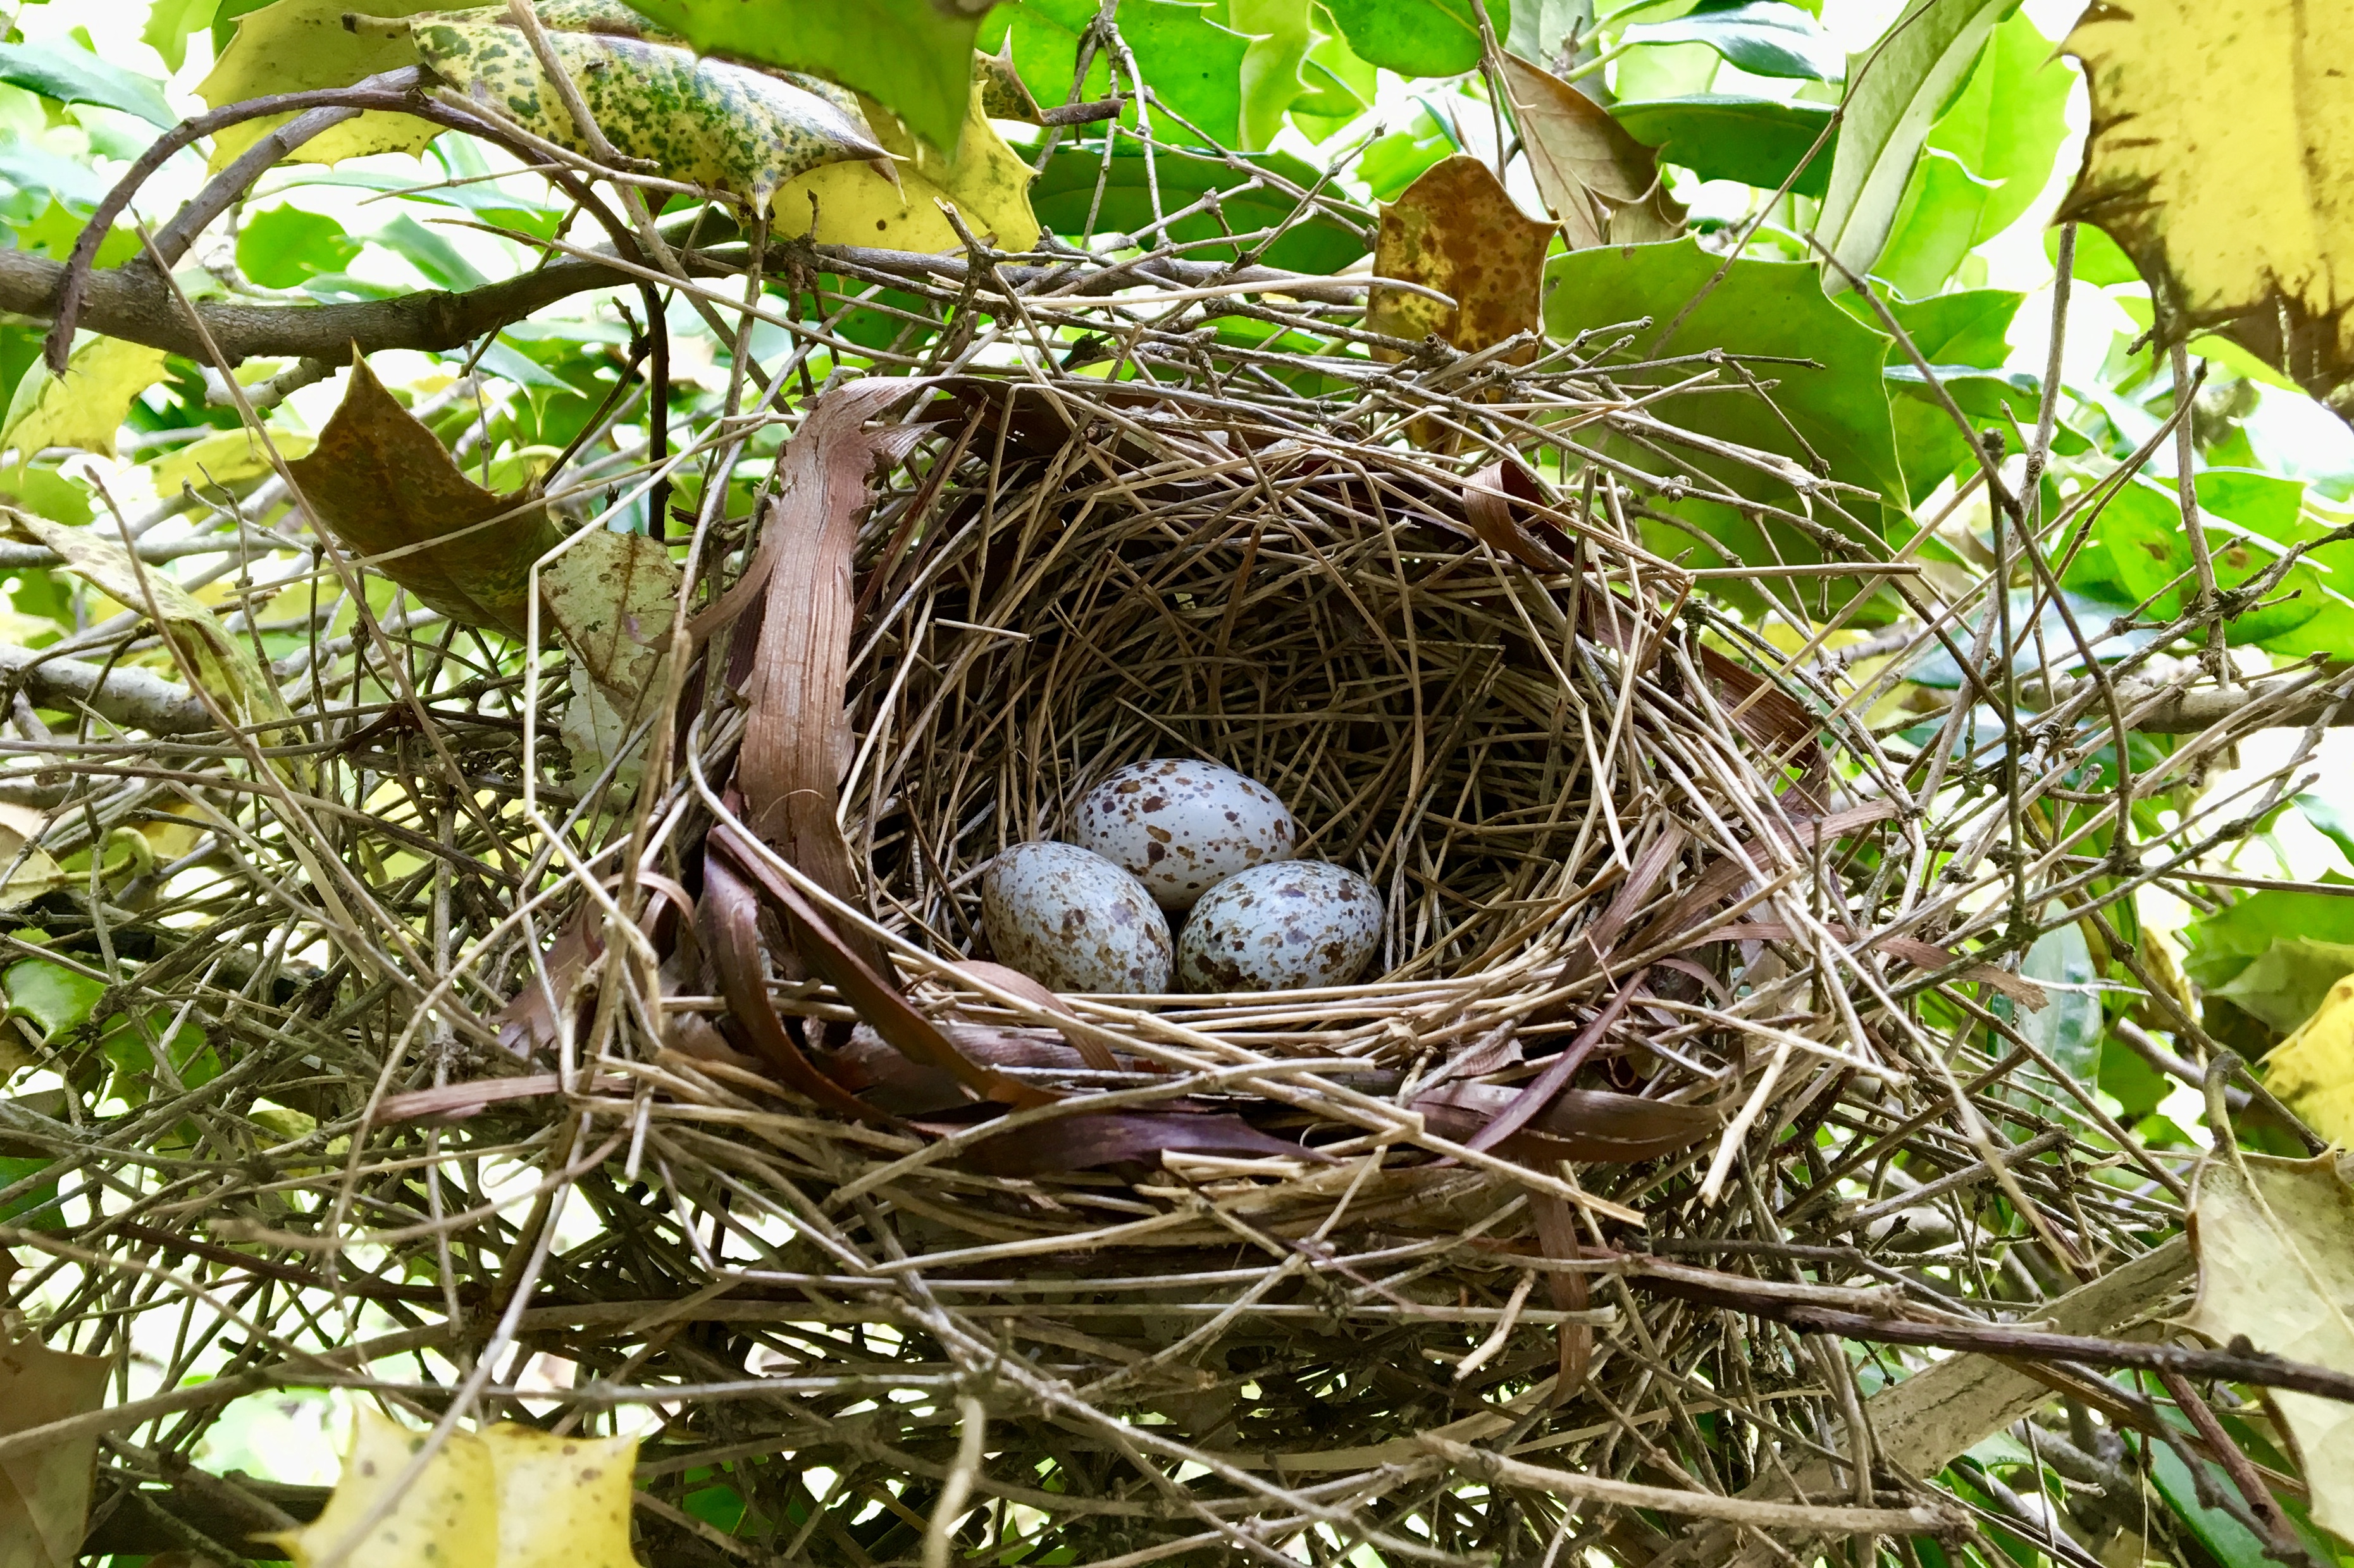 Their nests. Съедобные птичьи гнёзда. Птичьи гнезда Вьетнам. Птица портной гнездо. Гнездо 4.0.